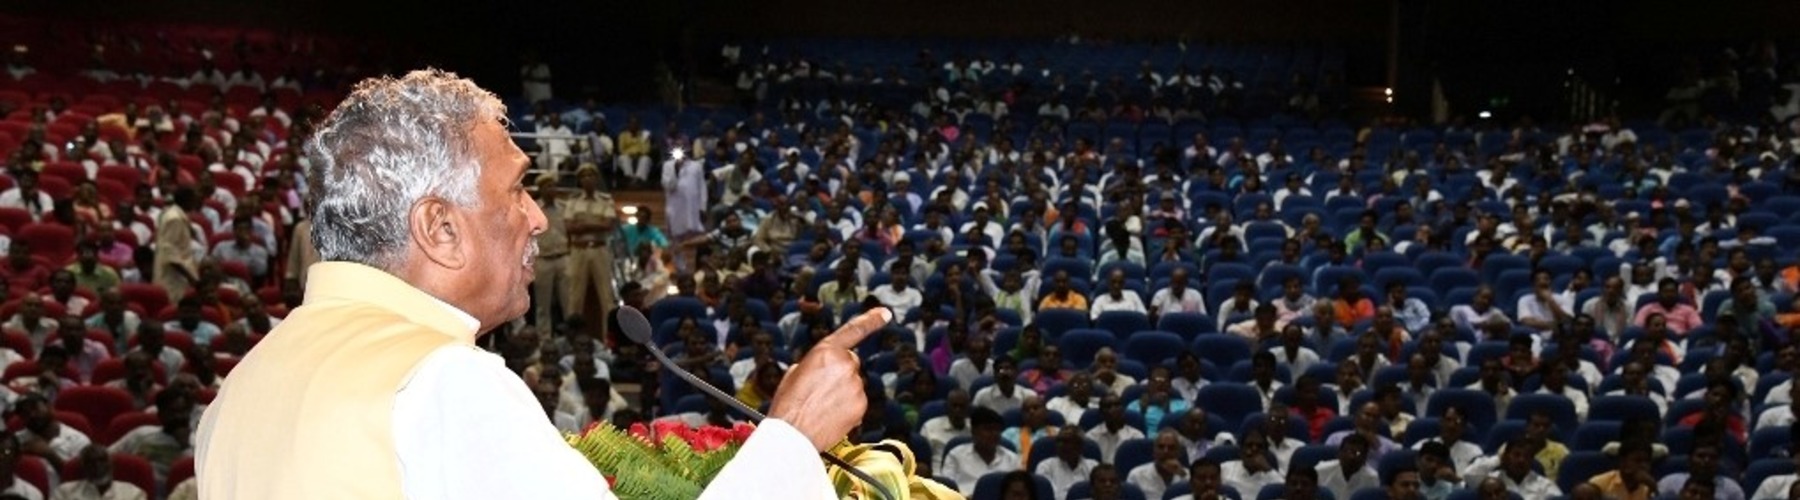 महामहिम बिहार के राज्यपाल एक बैठक में लोगों को संबोधित करते हुए।